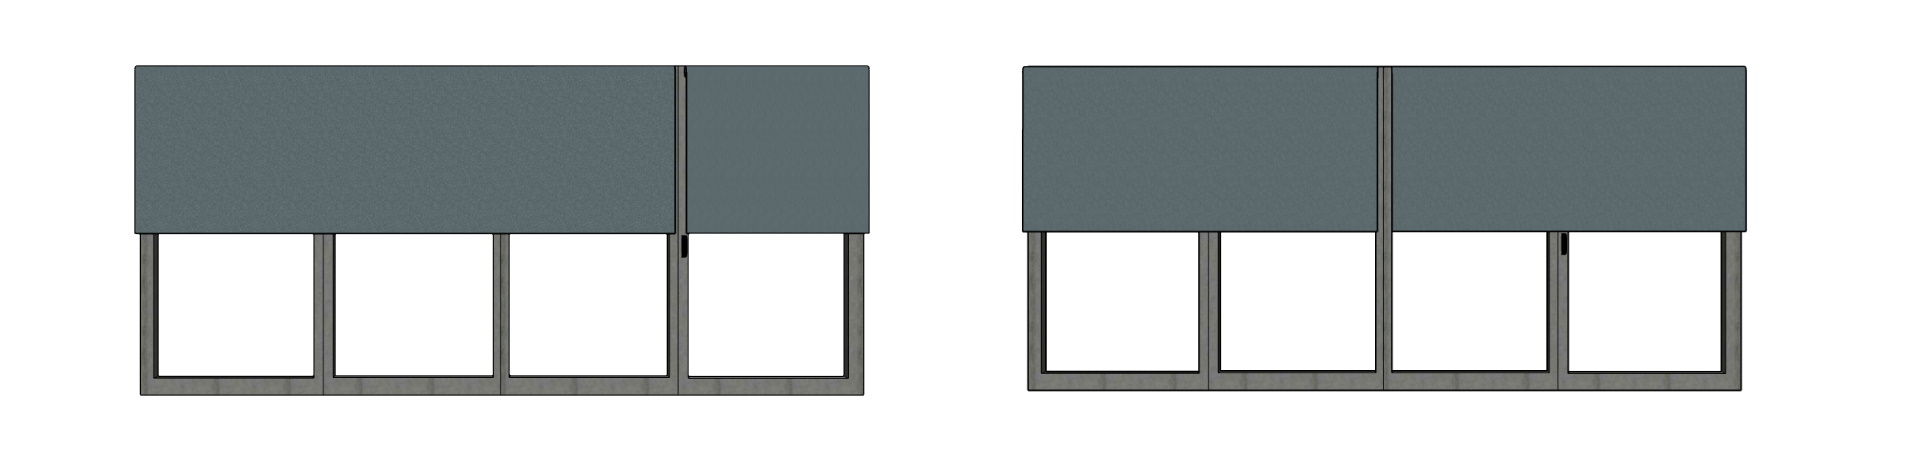 4-panel bi-fold door blinds